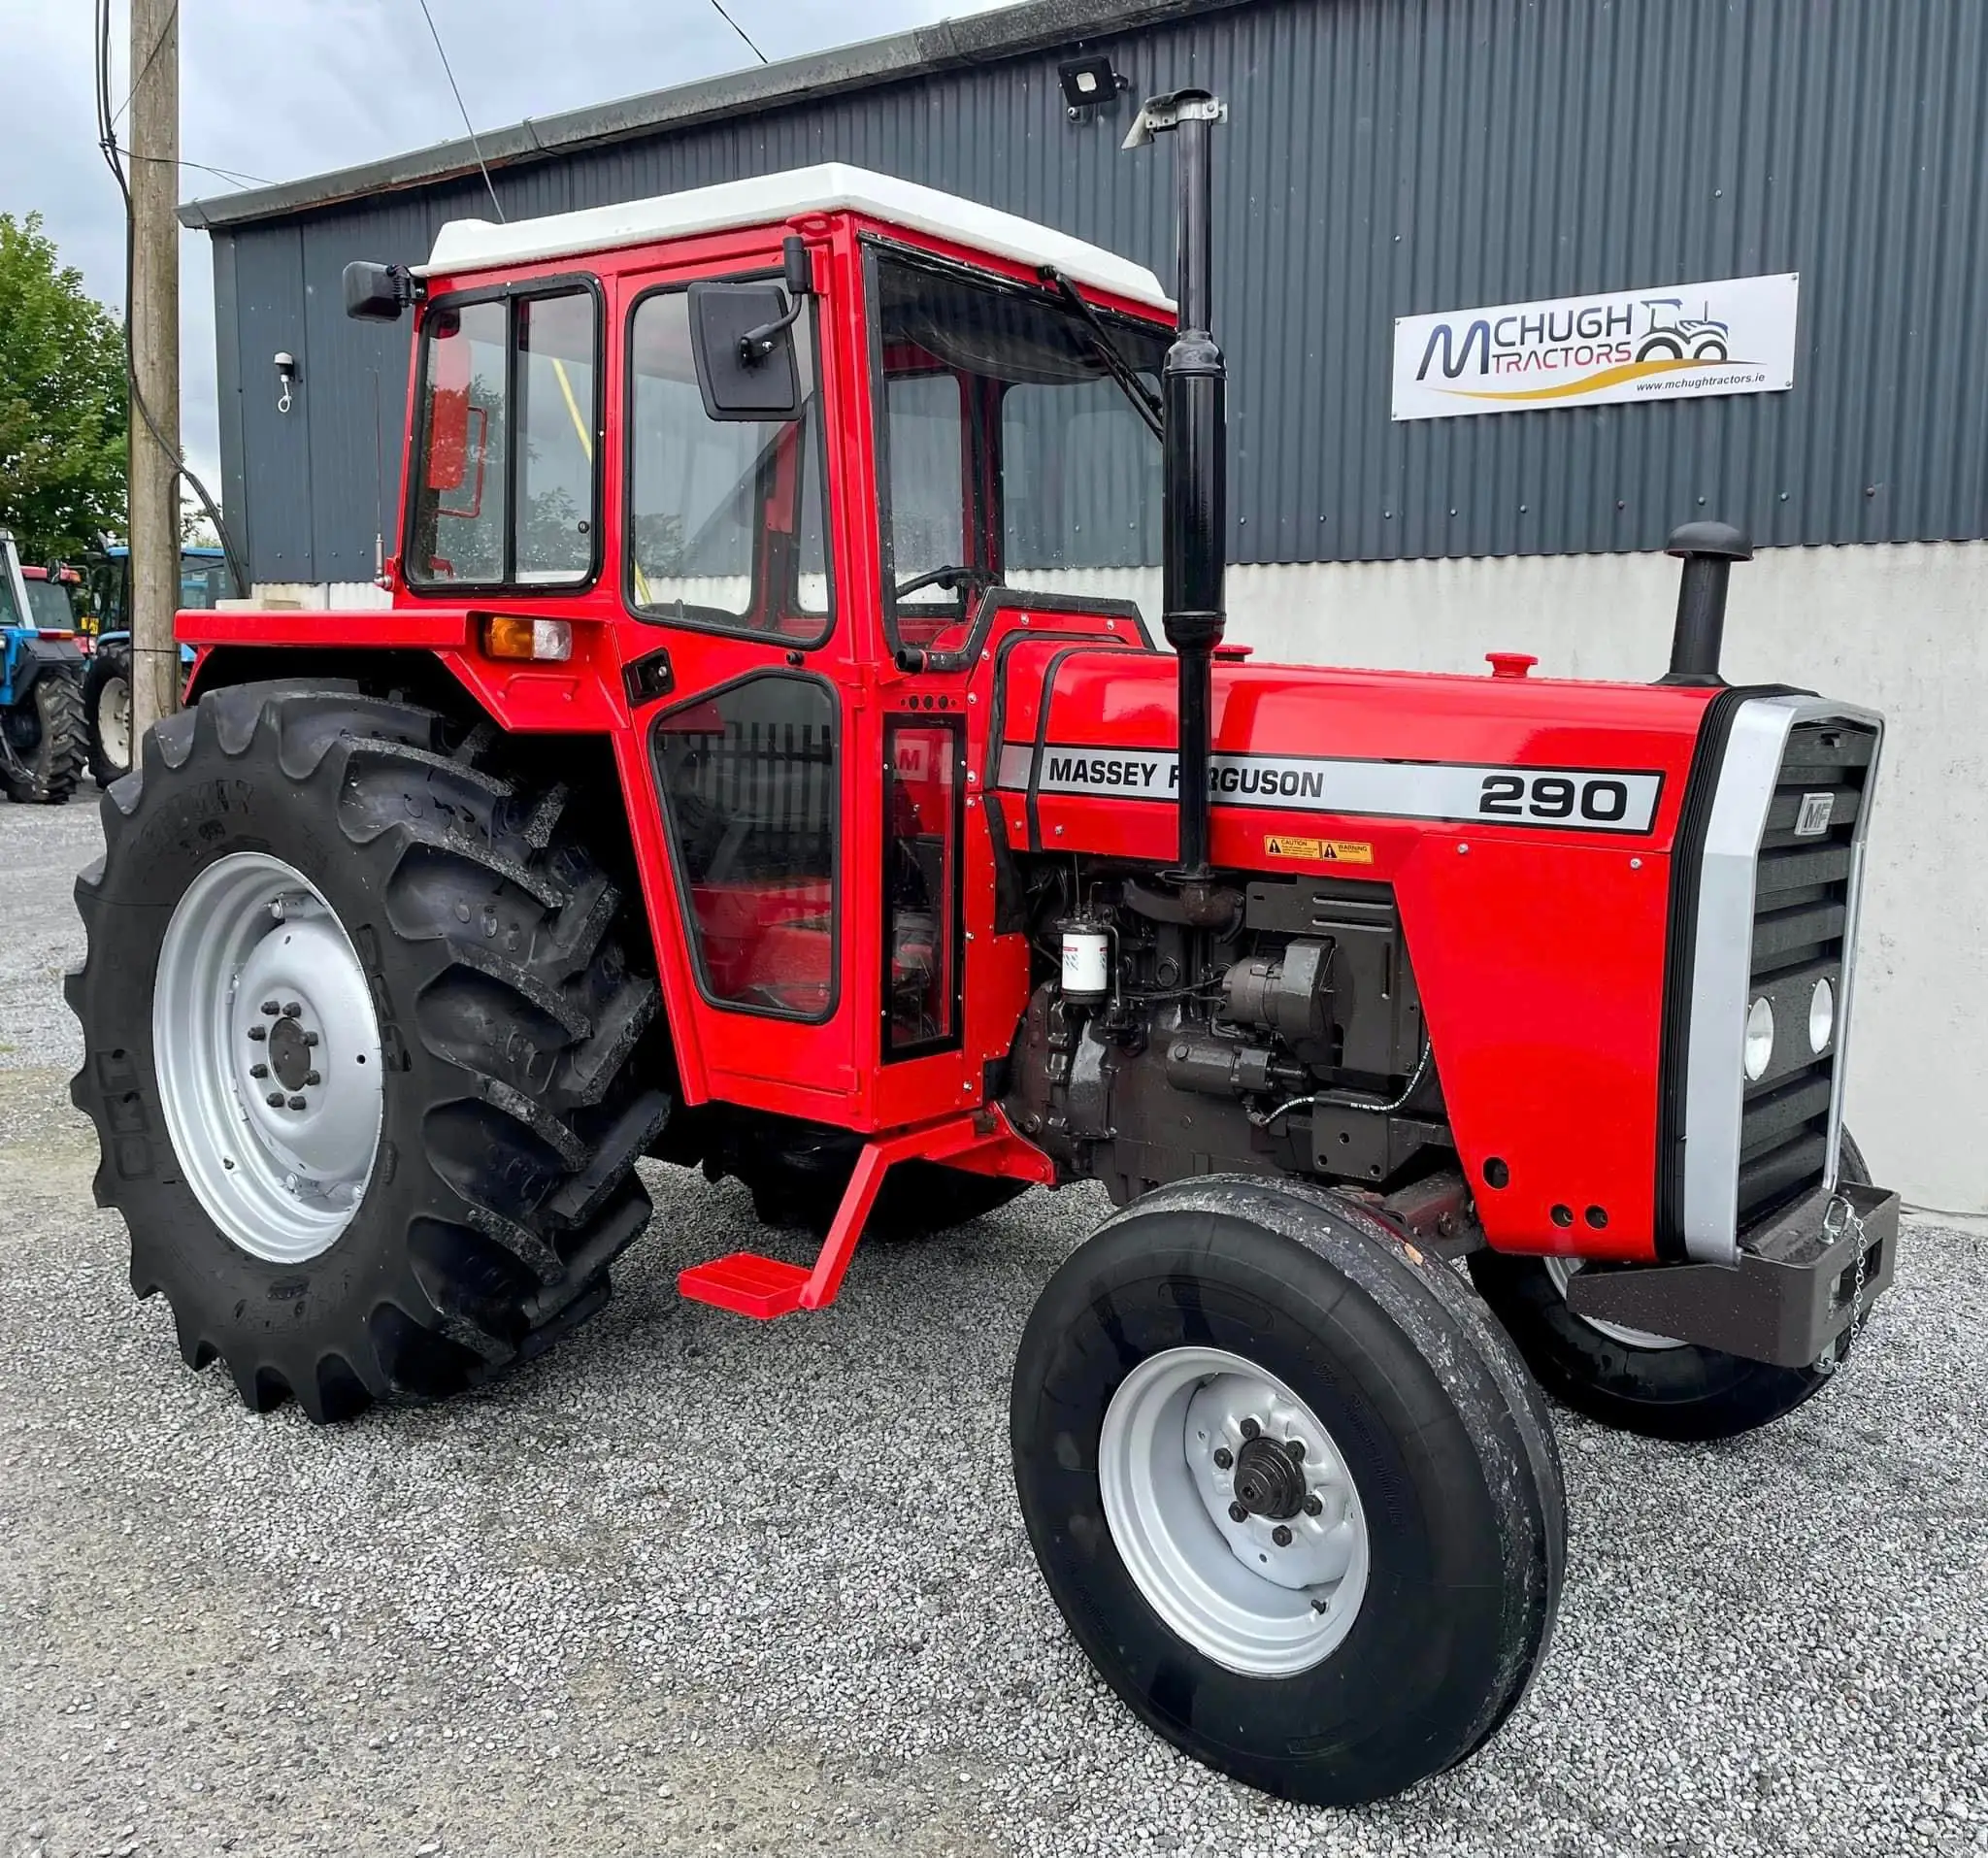 Assey erguson 385, tractor agrícola